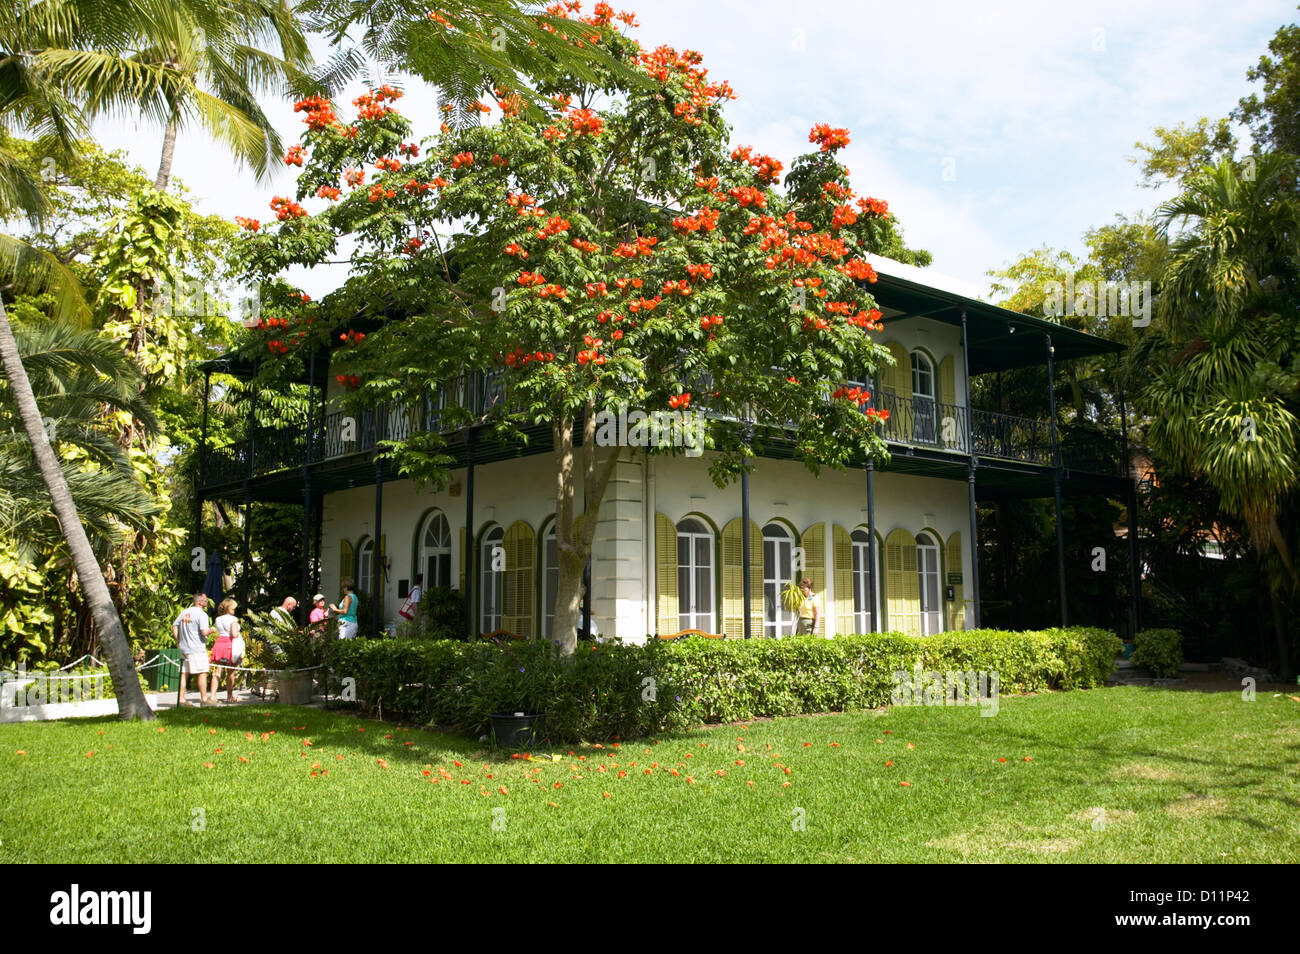 USA Florida Key West Ernest Hemingway House Stock Photo